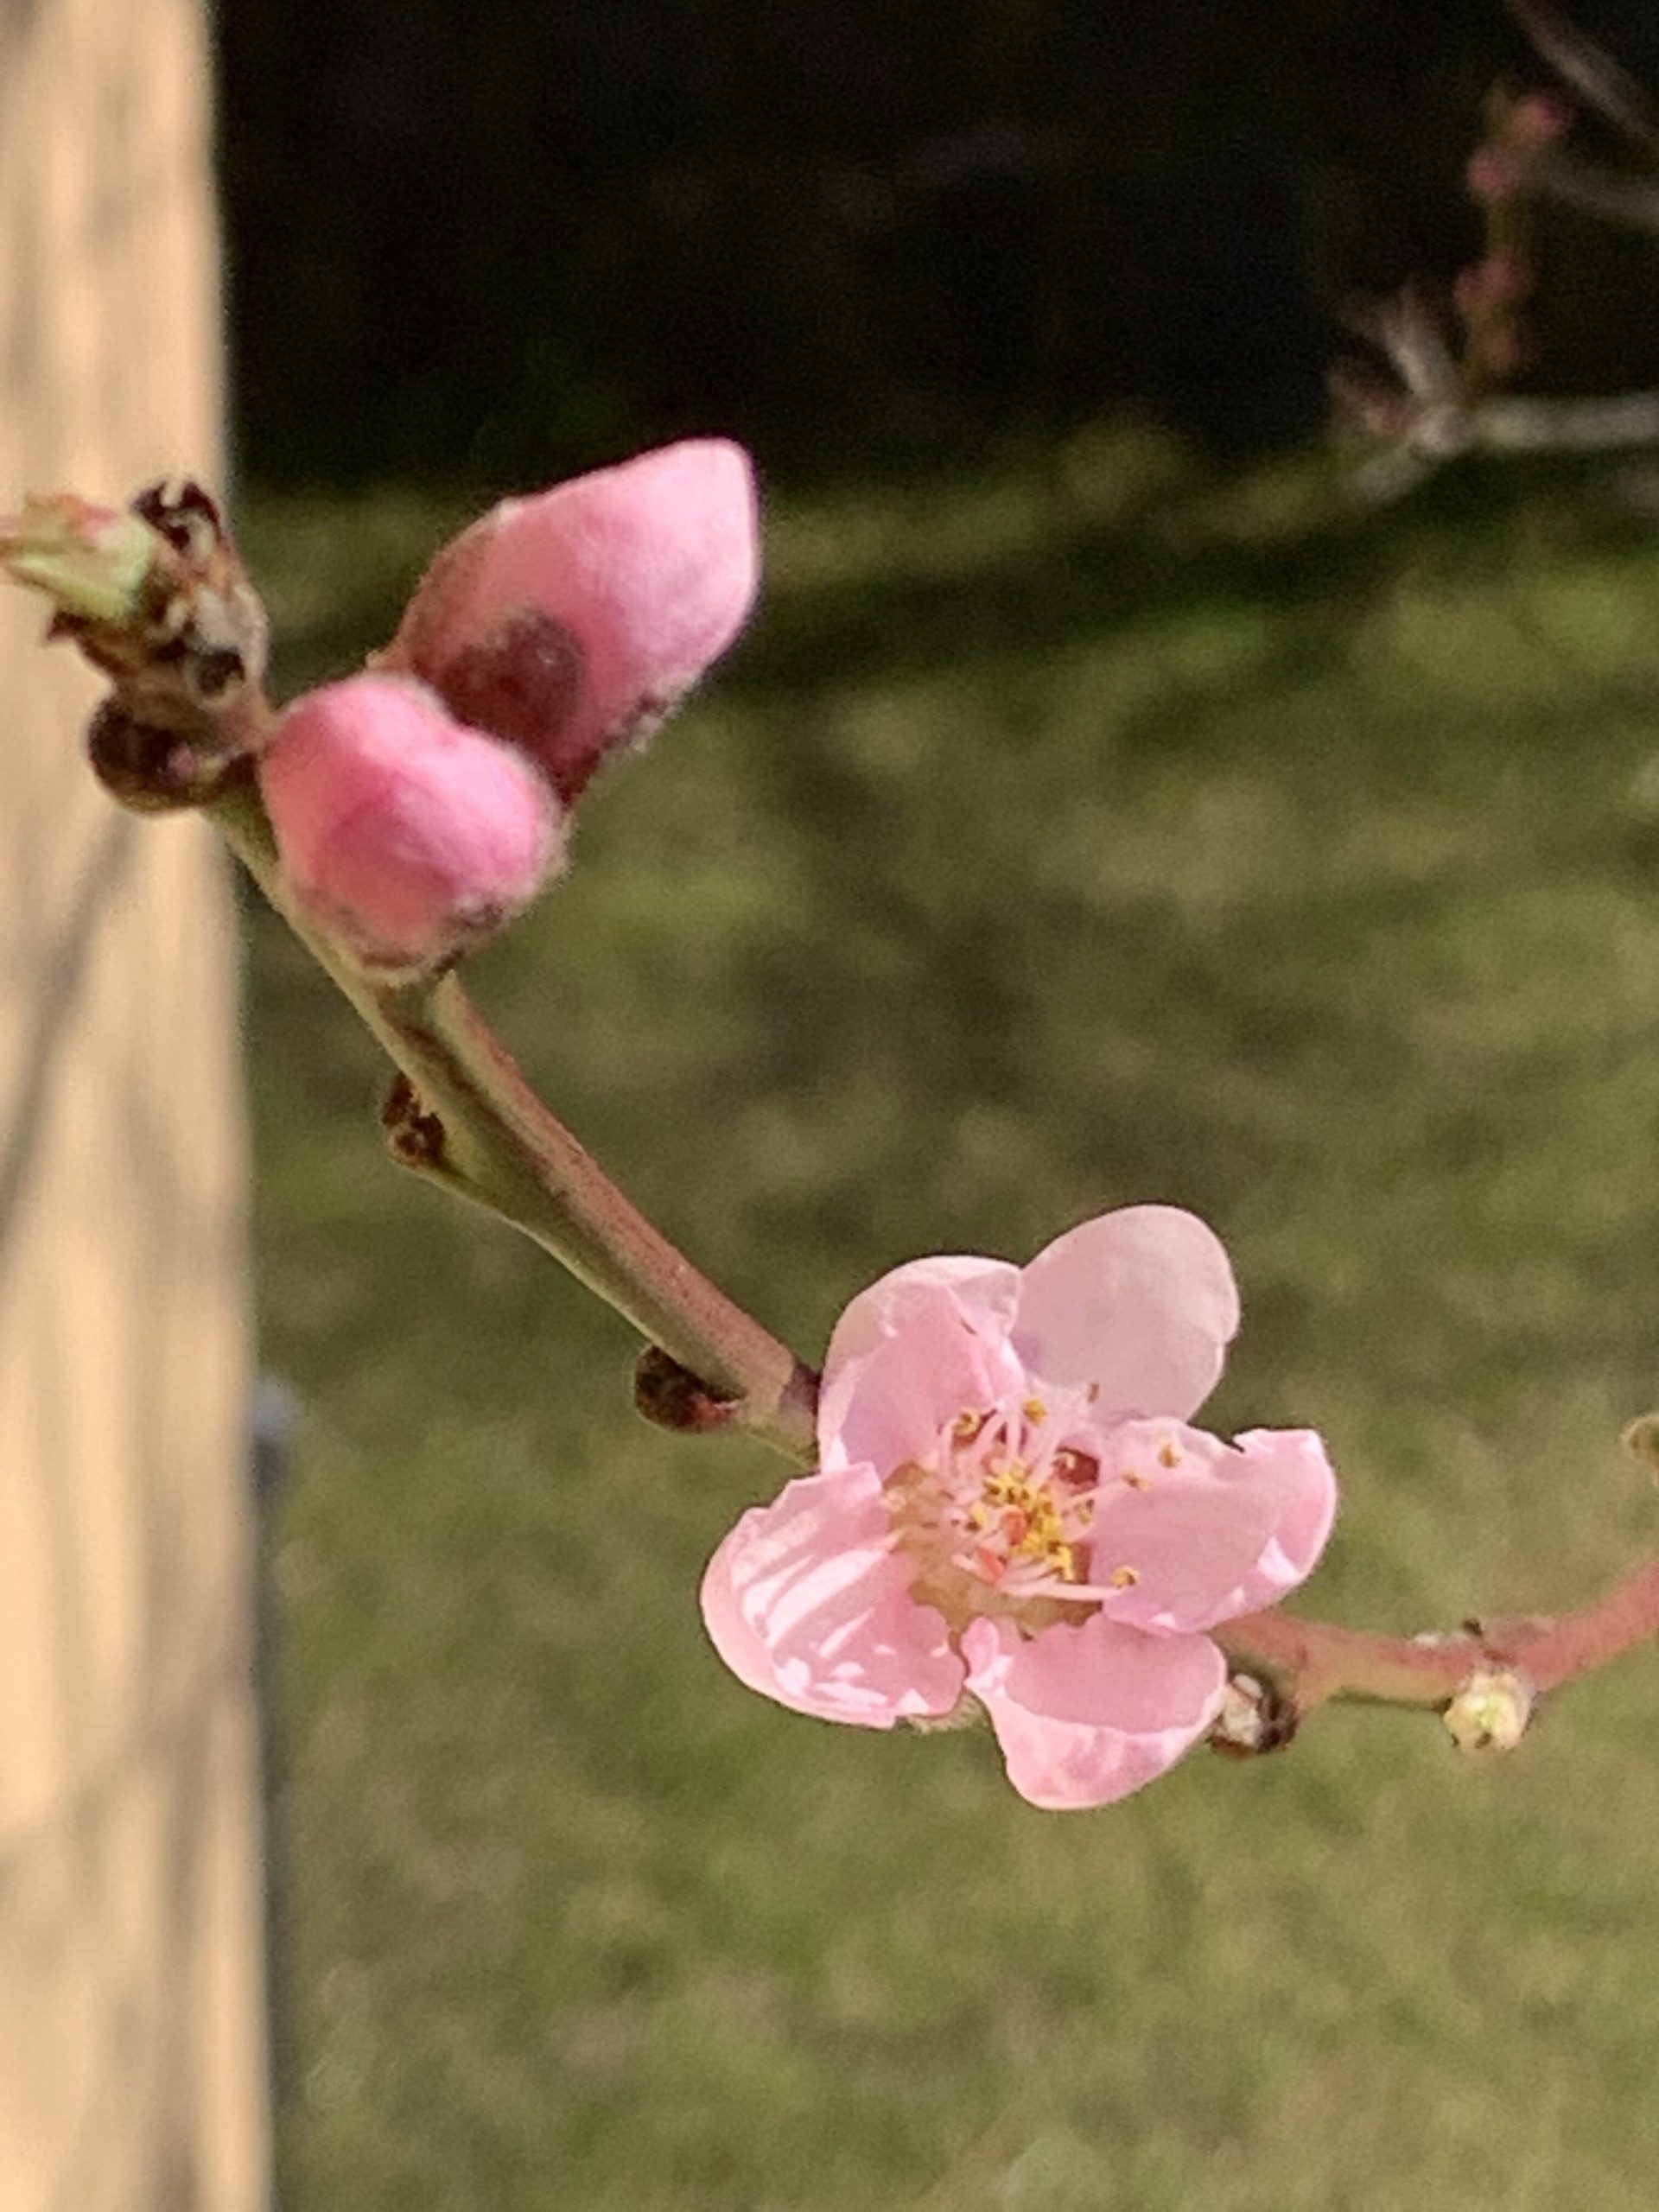 Die erste Blüte des Pfirsichbäumchens hat sich geöffnet